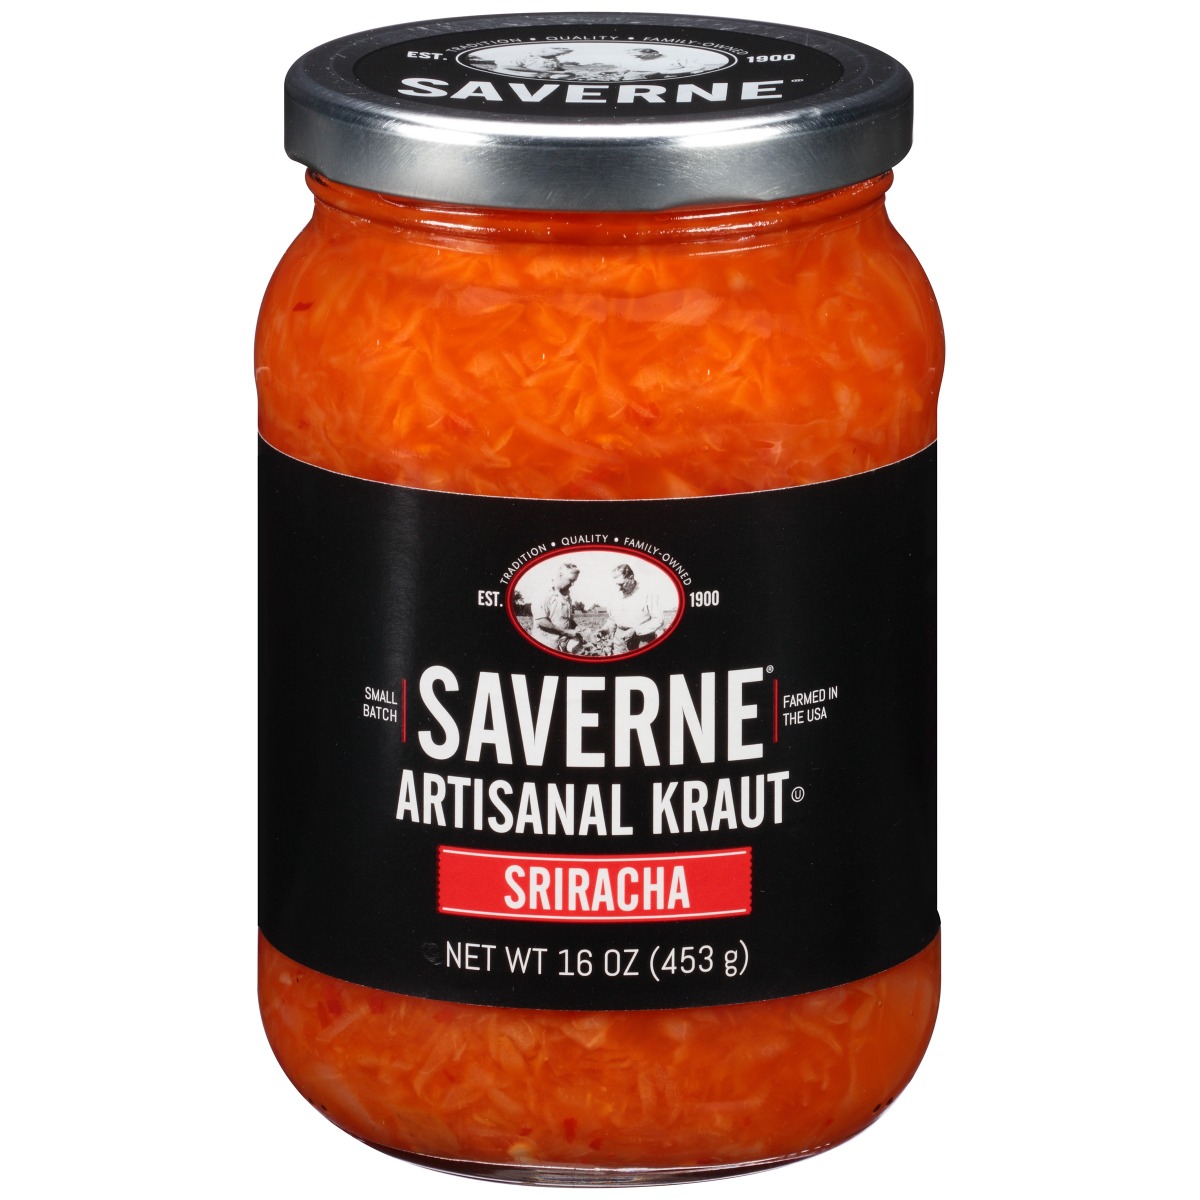 Saverne, Artisanal Kraut Sriracha - 074329300134